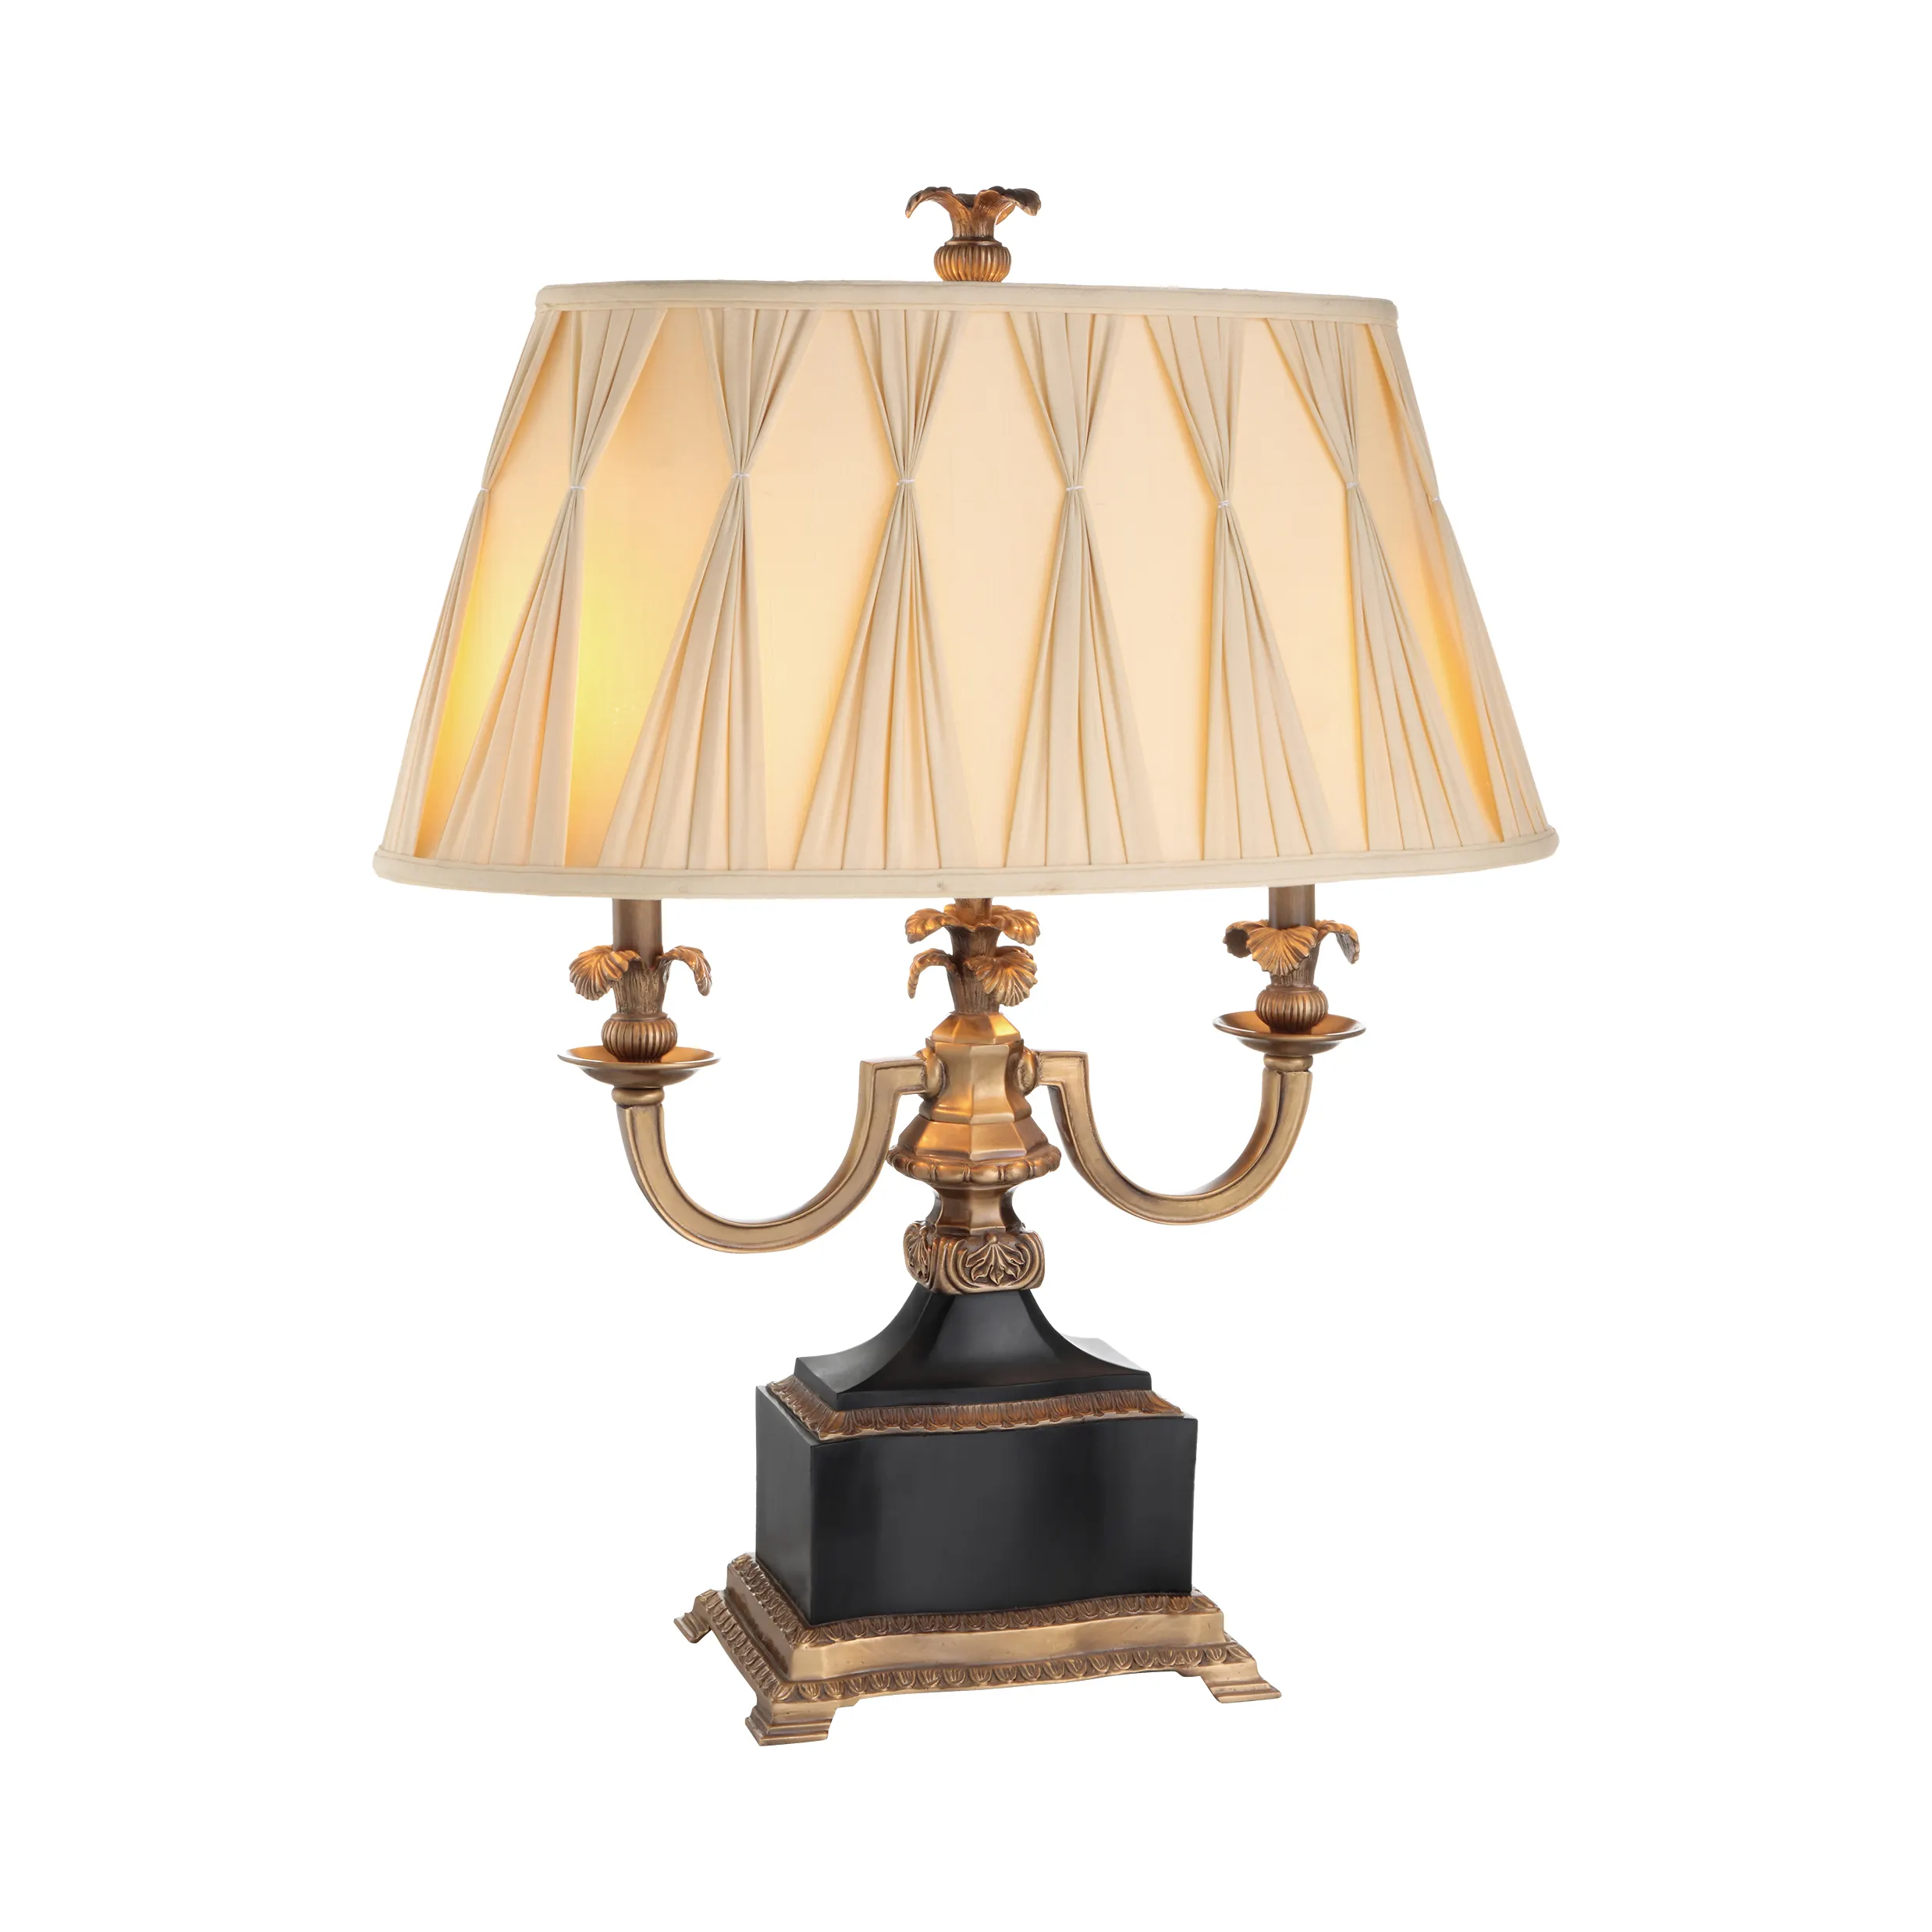 Современная роскошная Европейская настольная лампа из латуни, белая, черная, Мраморная, бежевая, со складками